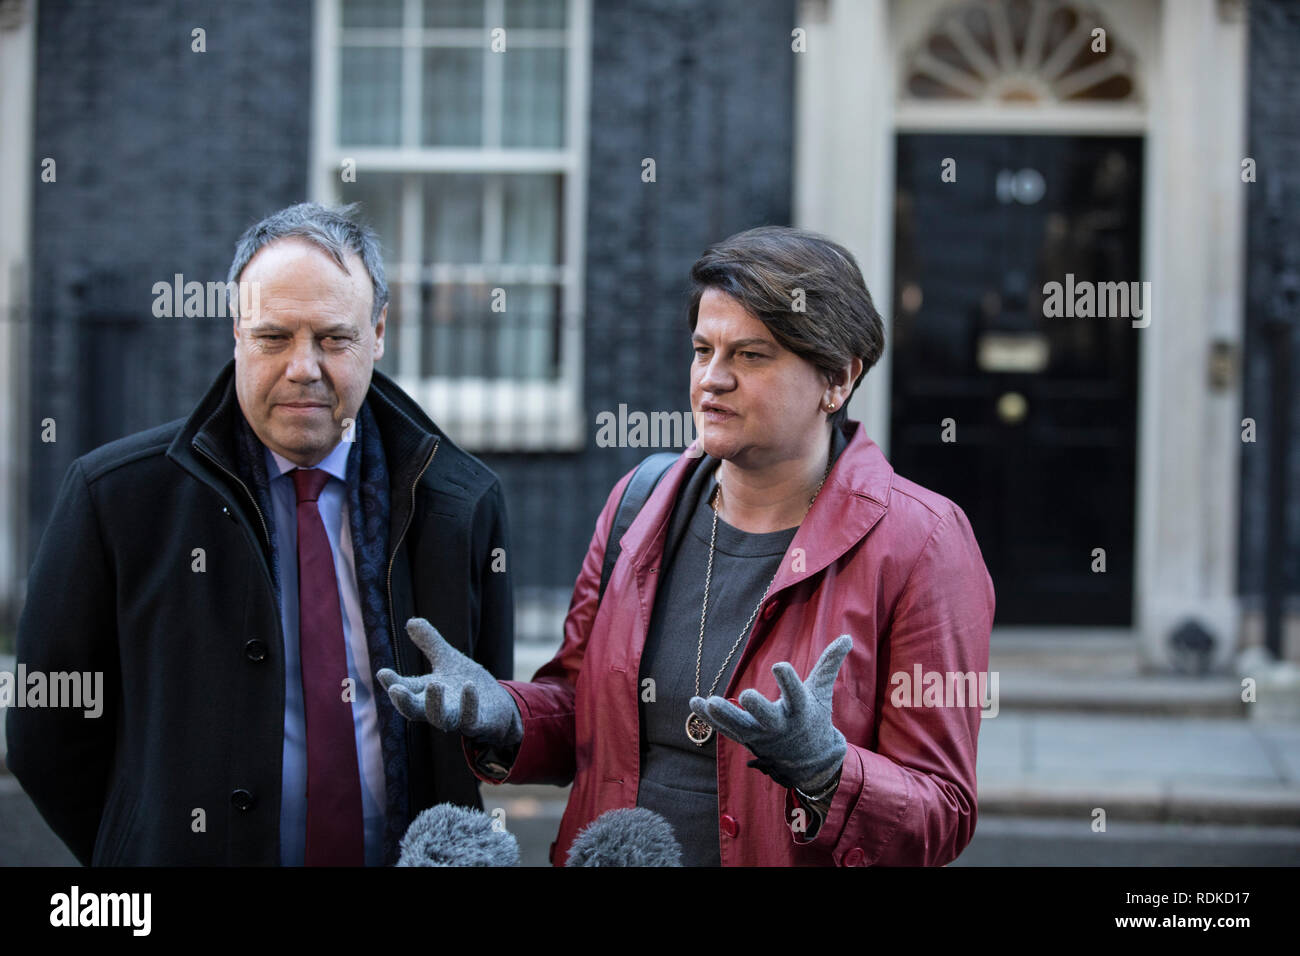 Arlene leader Förderung der Democratic Unionist Party mit Nigel Dodds stellvertretende Vorsitzende außerhalb Nr. 10 Downing Street, Whitehall, London, England, Großbritannien Stockfoto